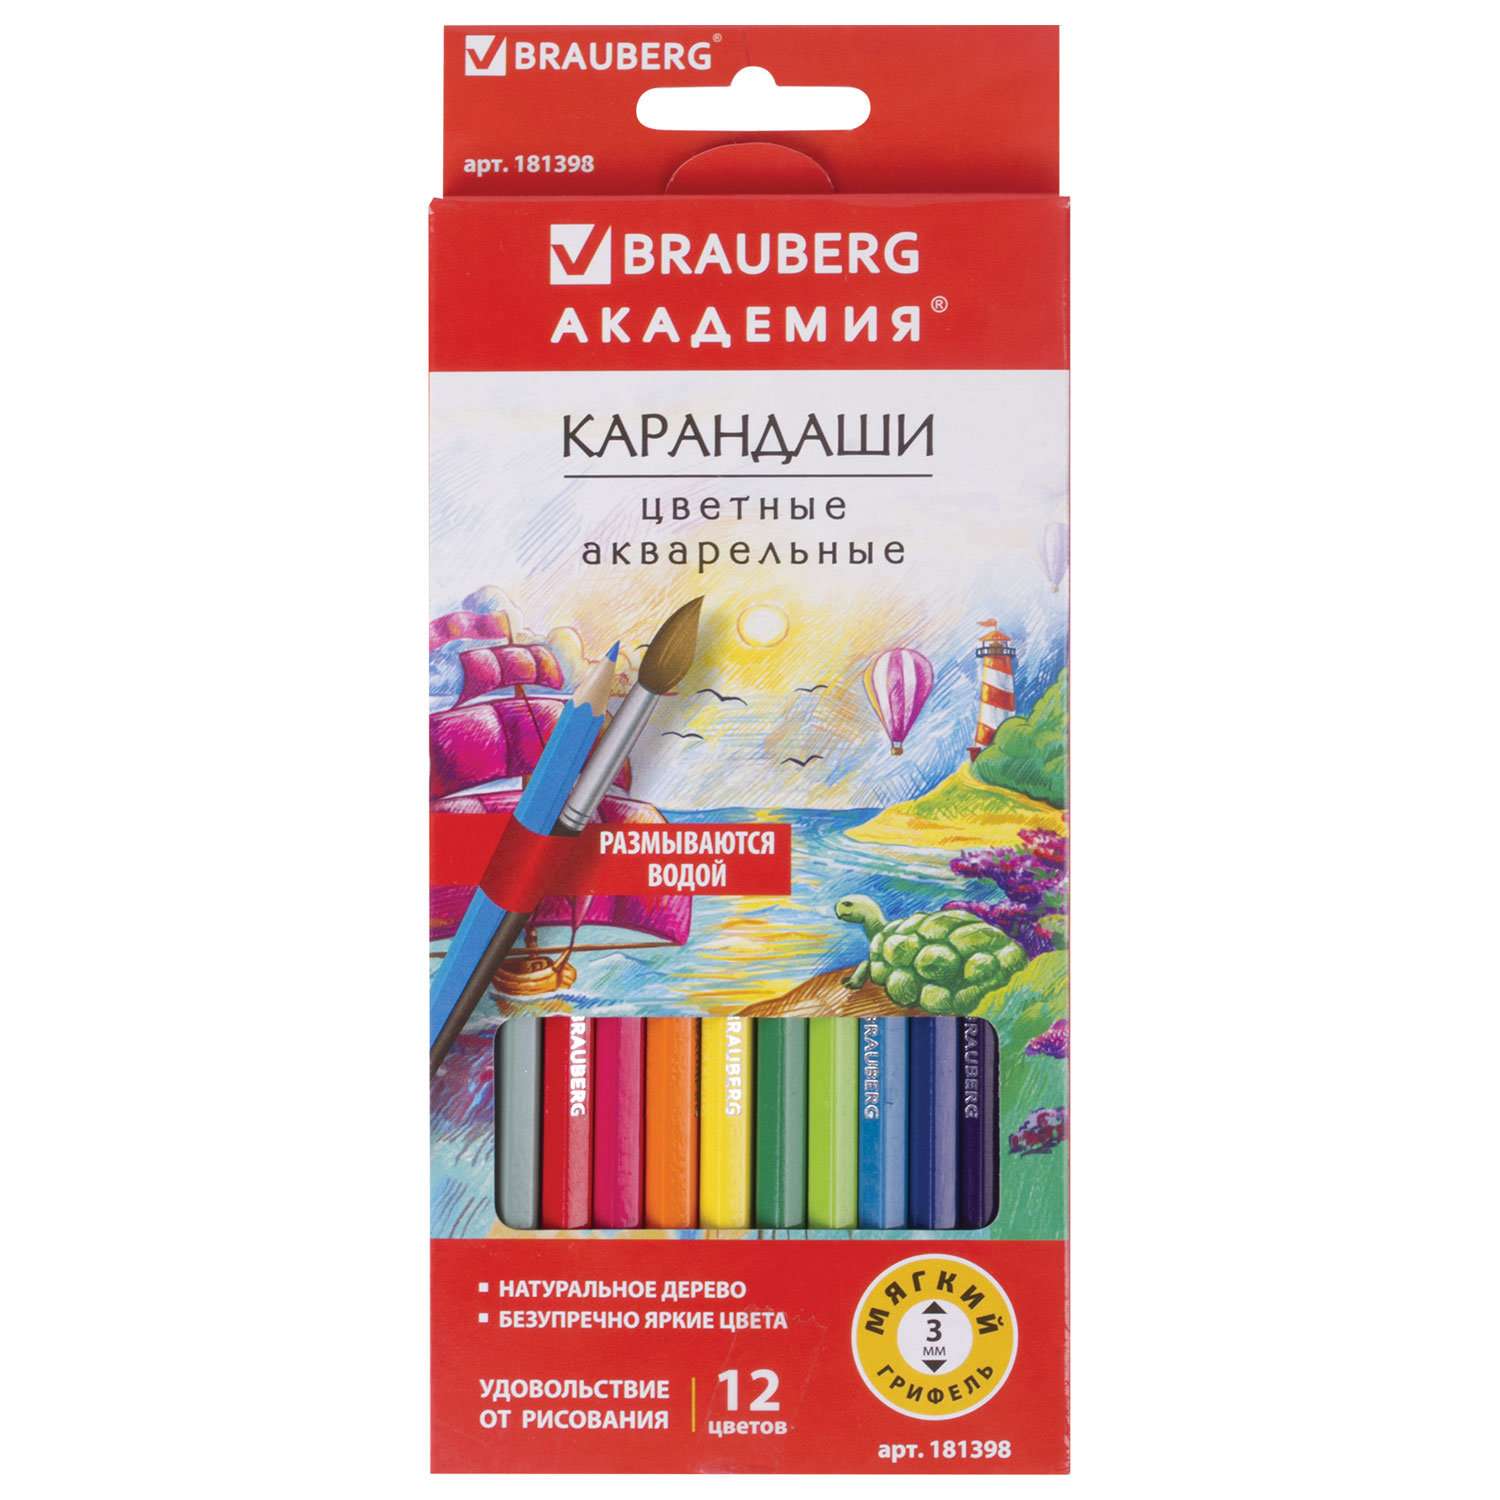 Карандаши цветные Brauberg акварельные Академия 12 цветов высокое качество - фото 6